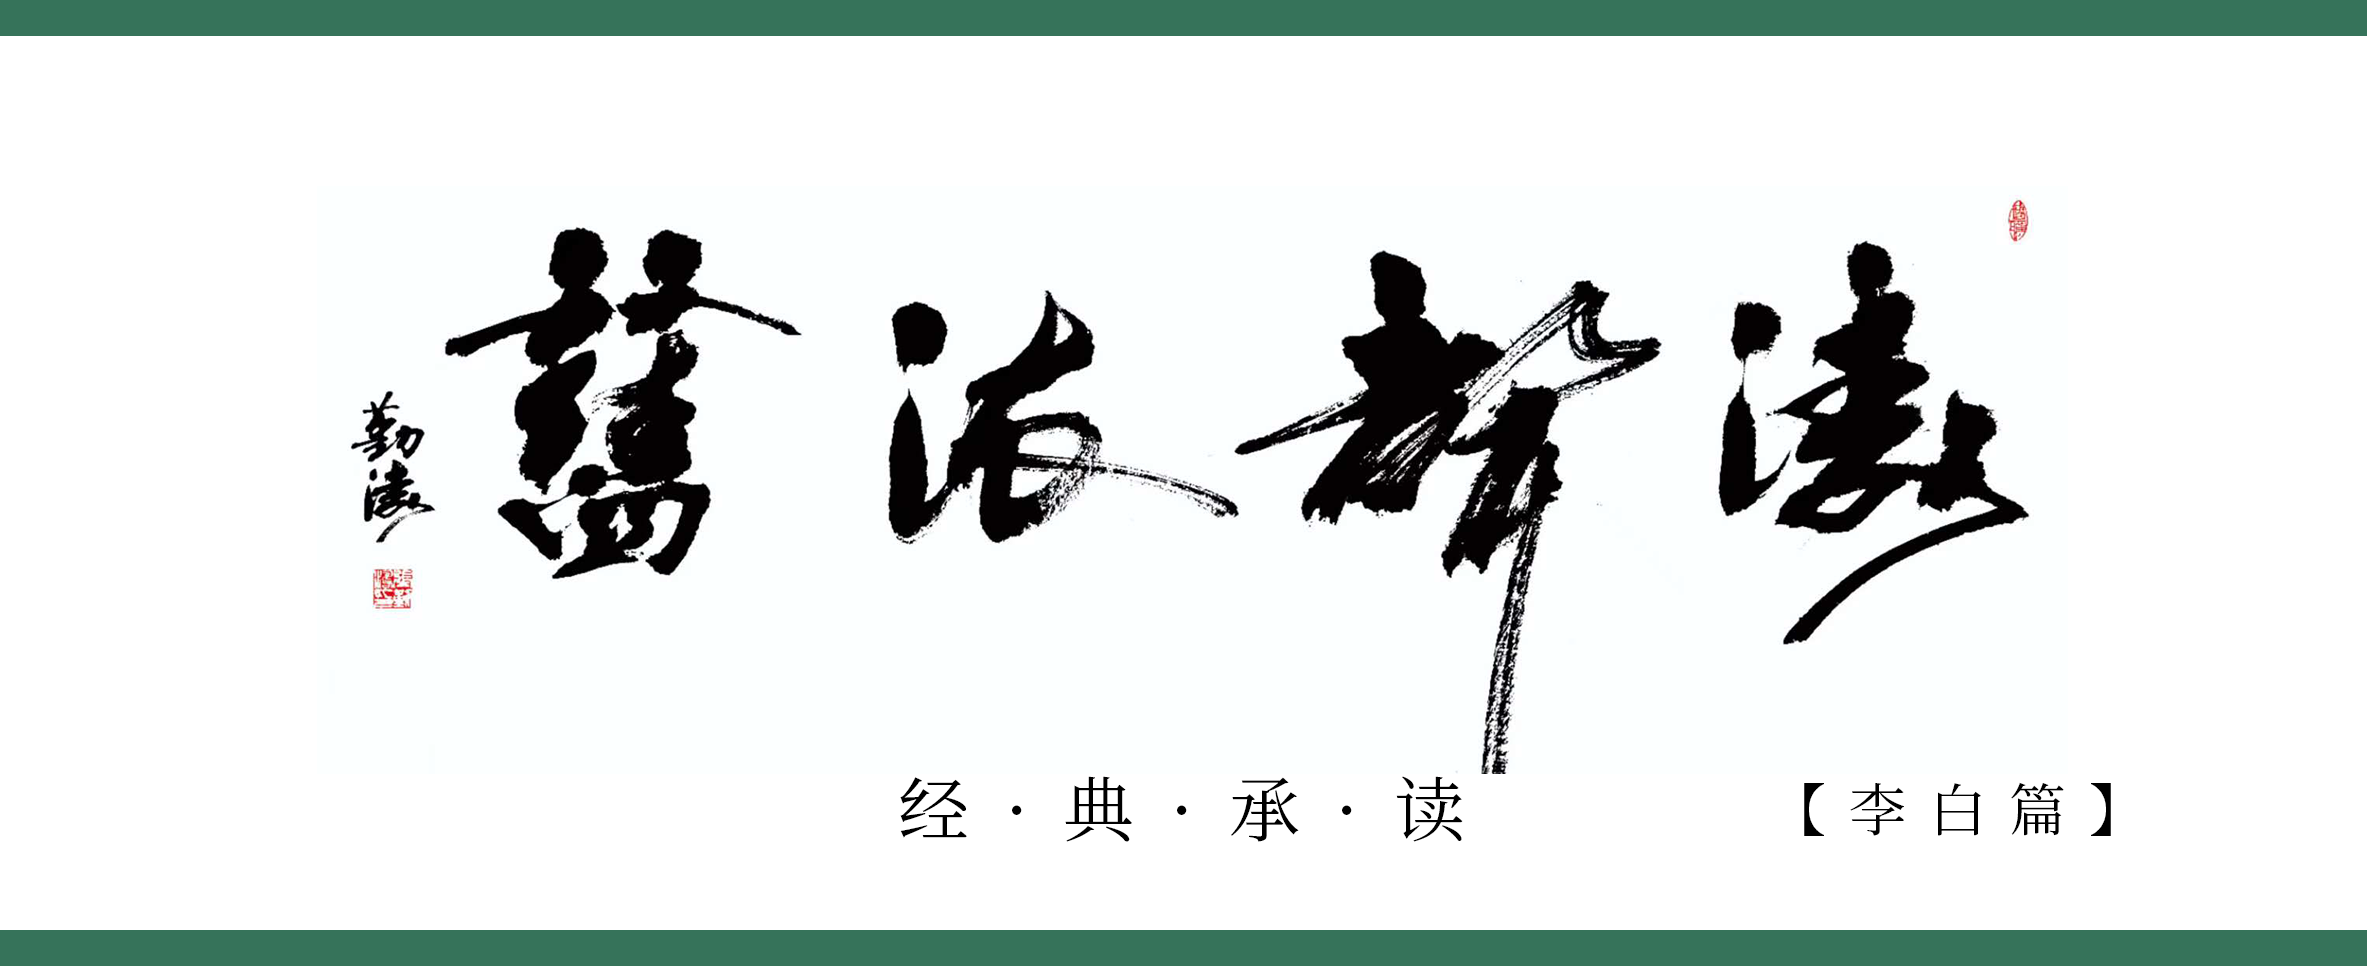 《涛声依旧 · 经典承读》——上皇西巡南京歌（其七）(图1)